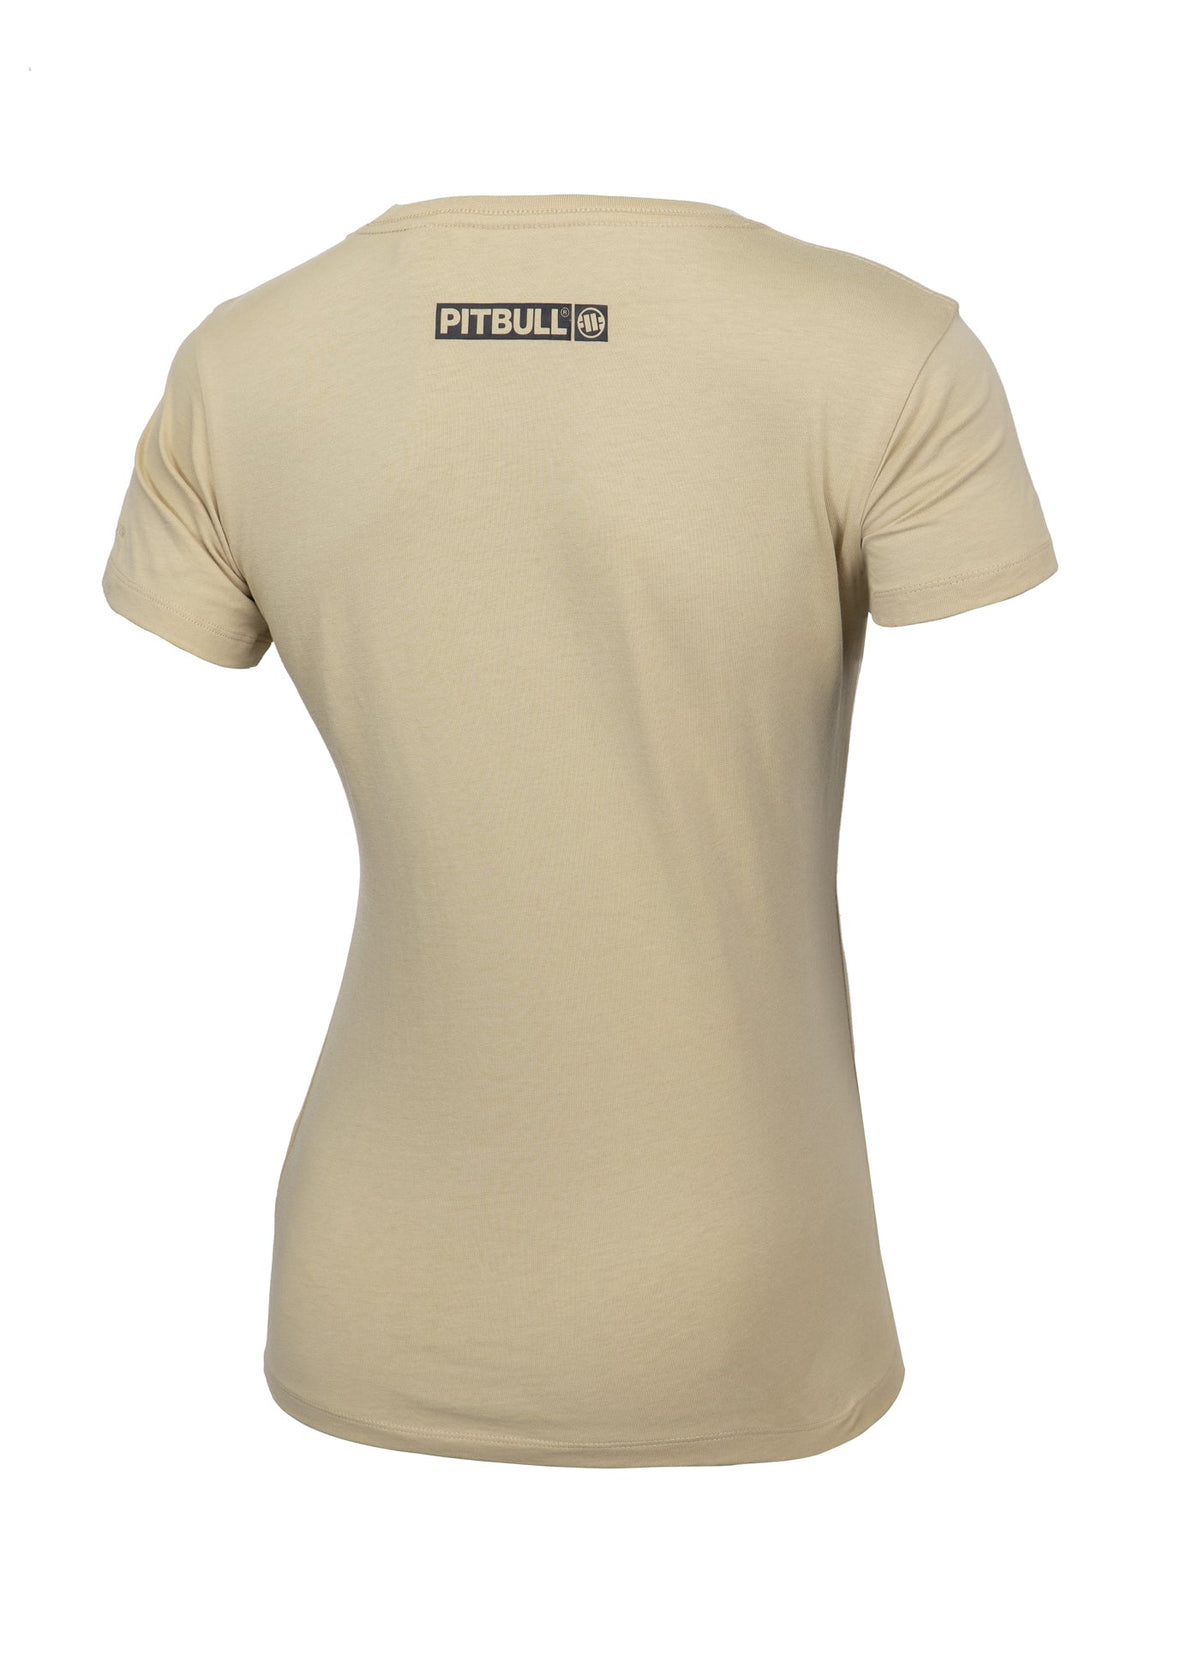 HILLTOP REGULAR Sand T-shirt